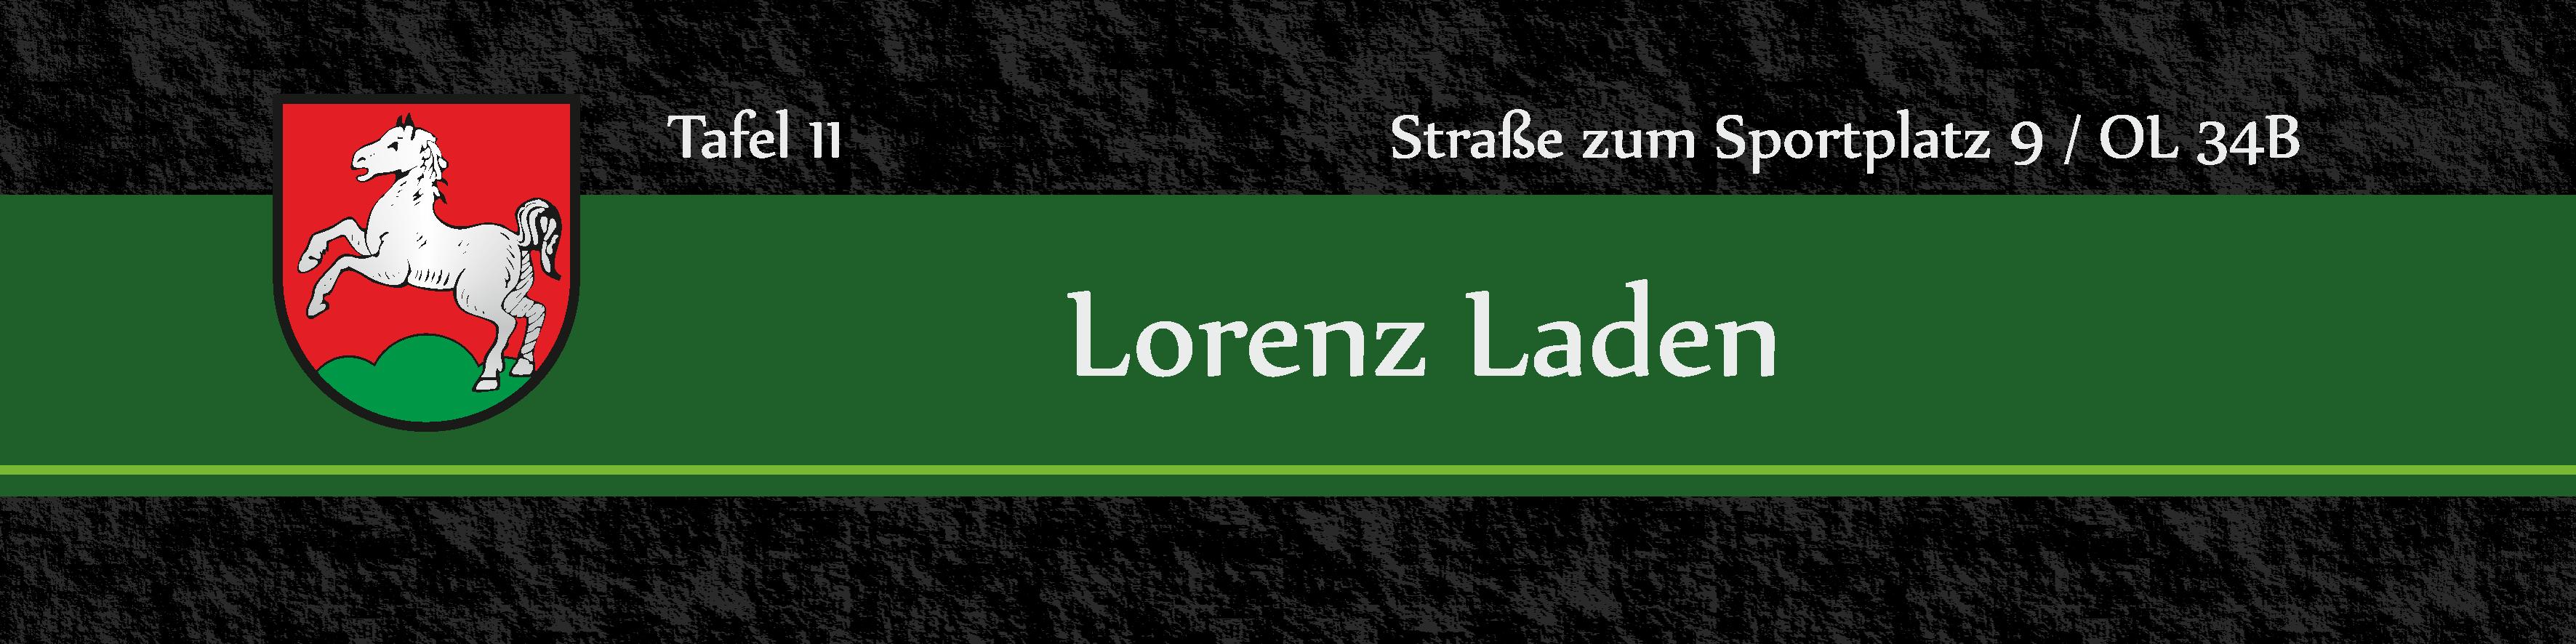 11 Lorenz Laden